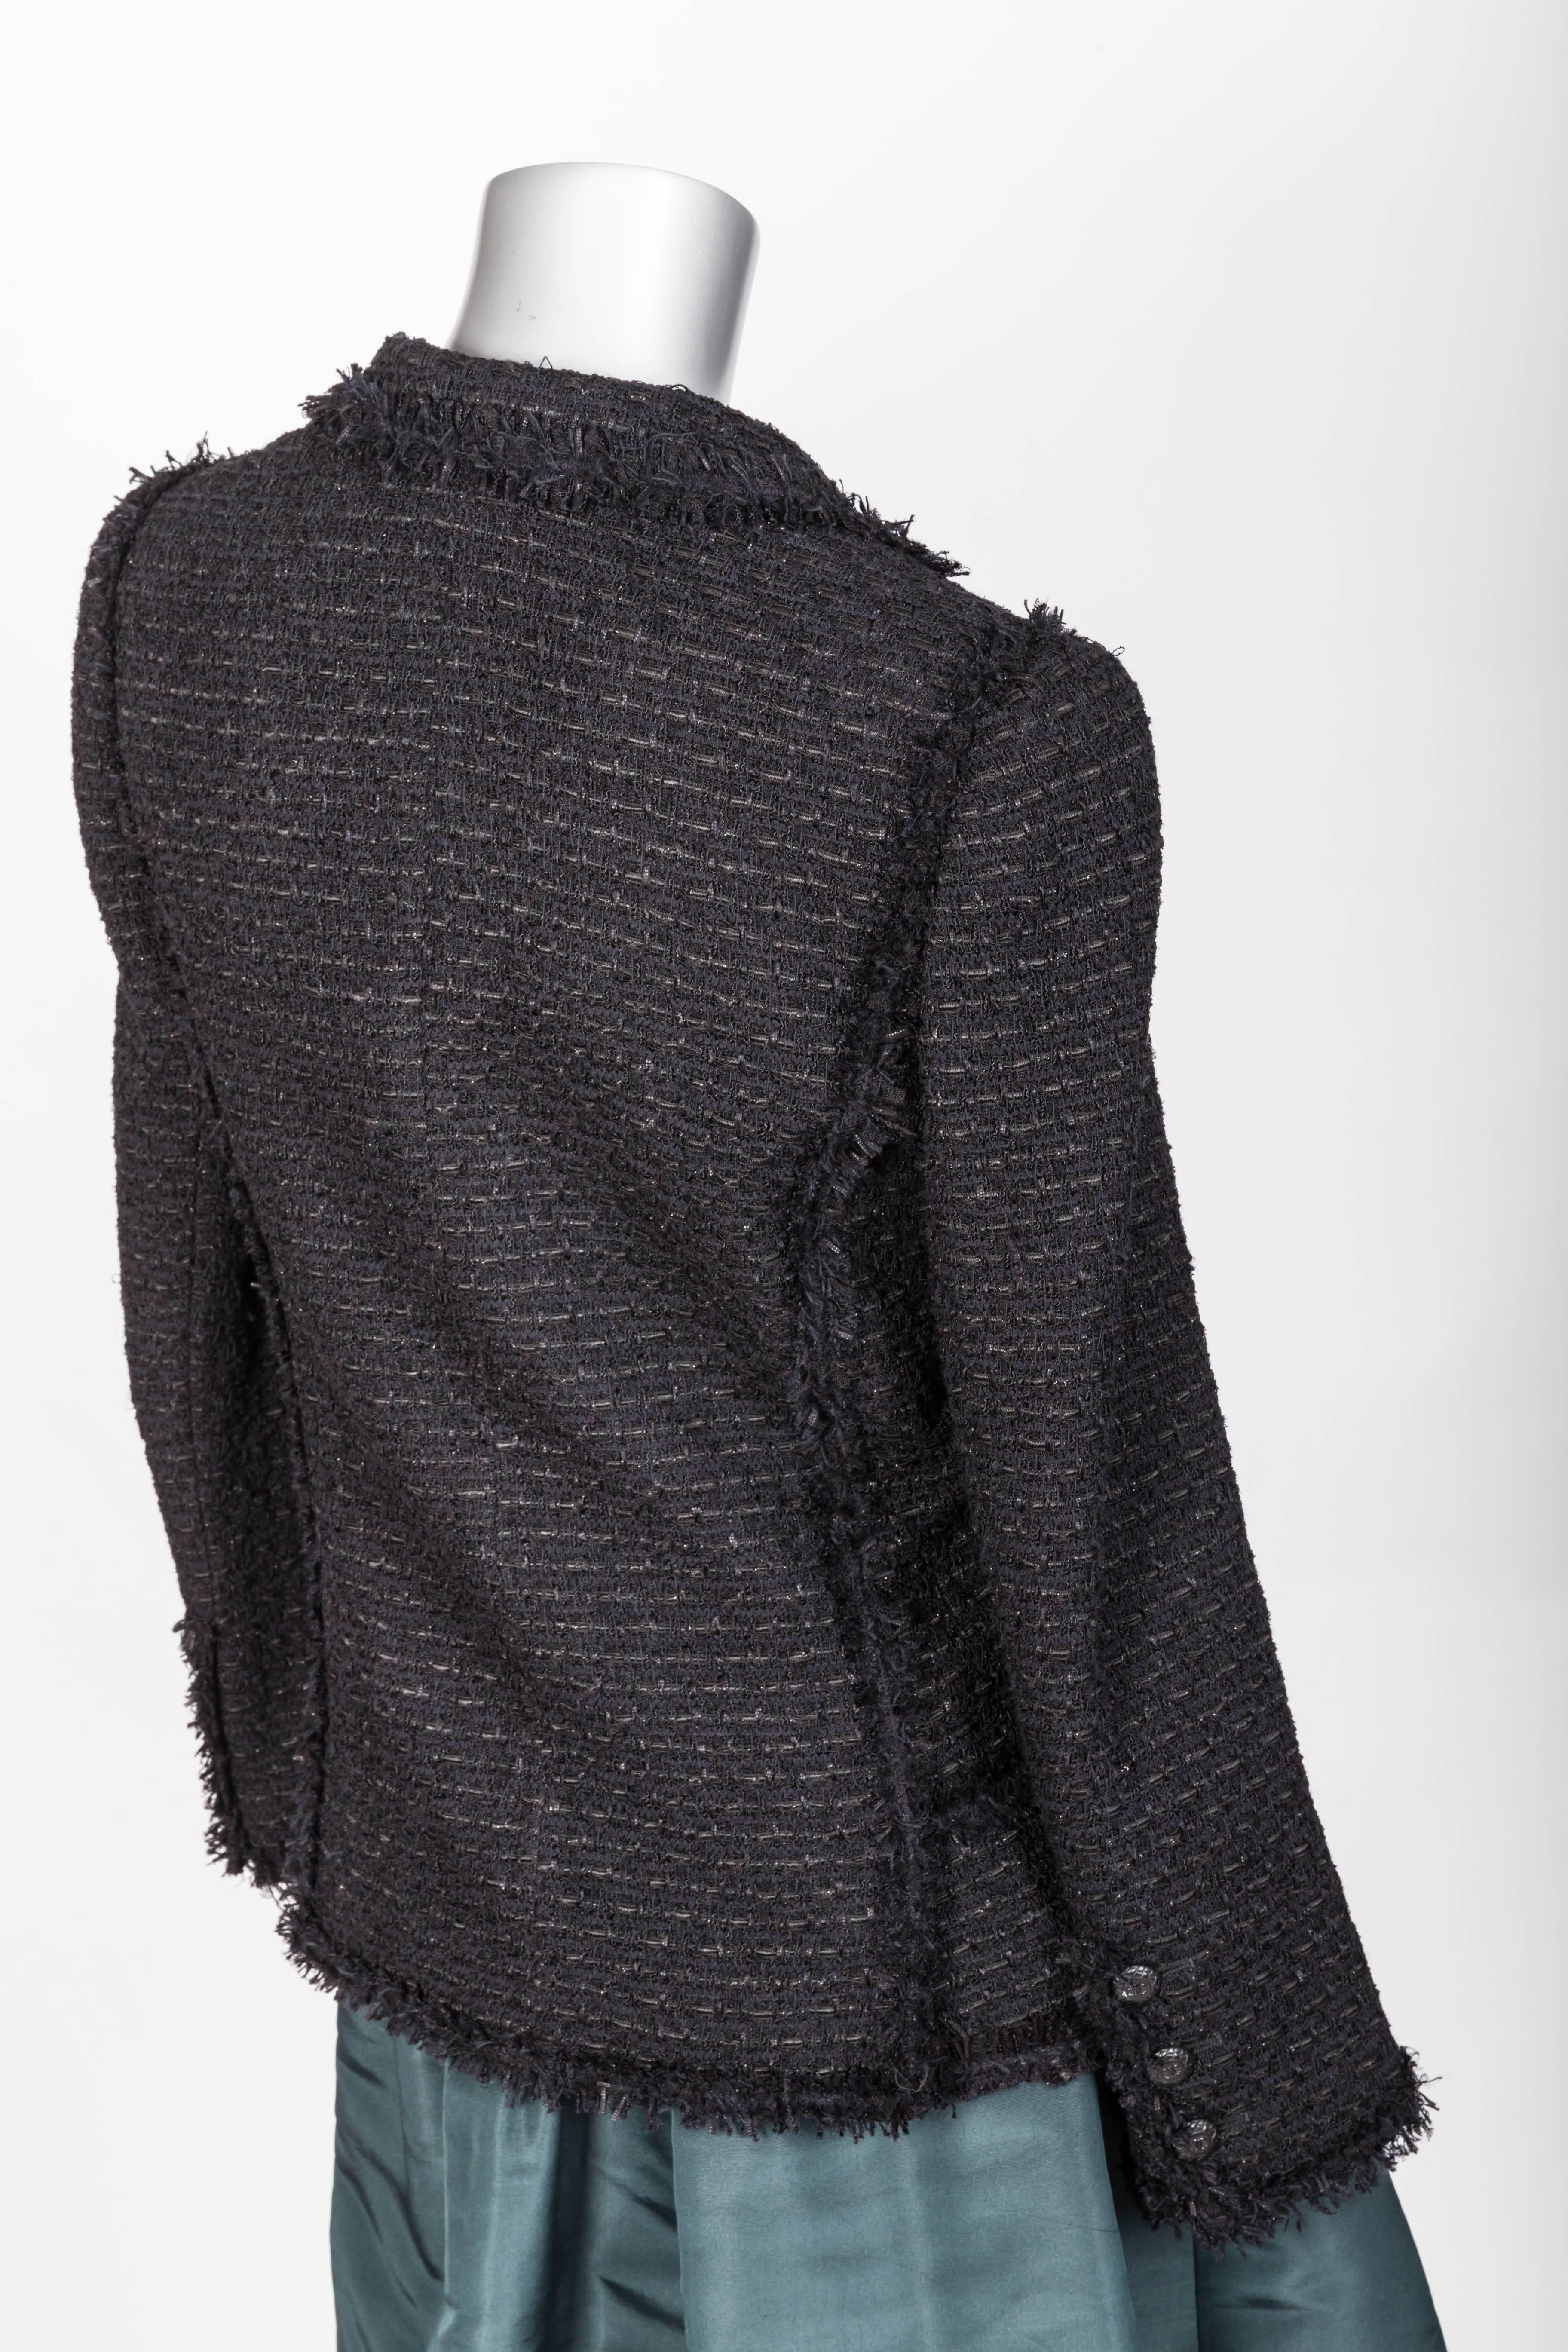 Chanel Black Jacket with Fringe Trim - FR 38 / US 6 2